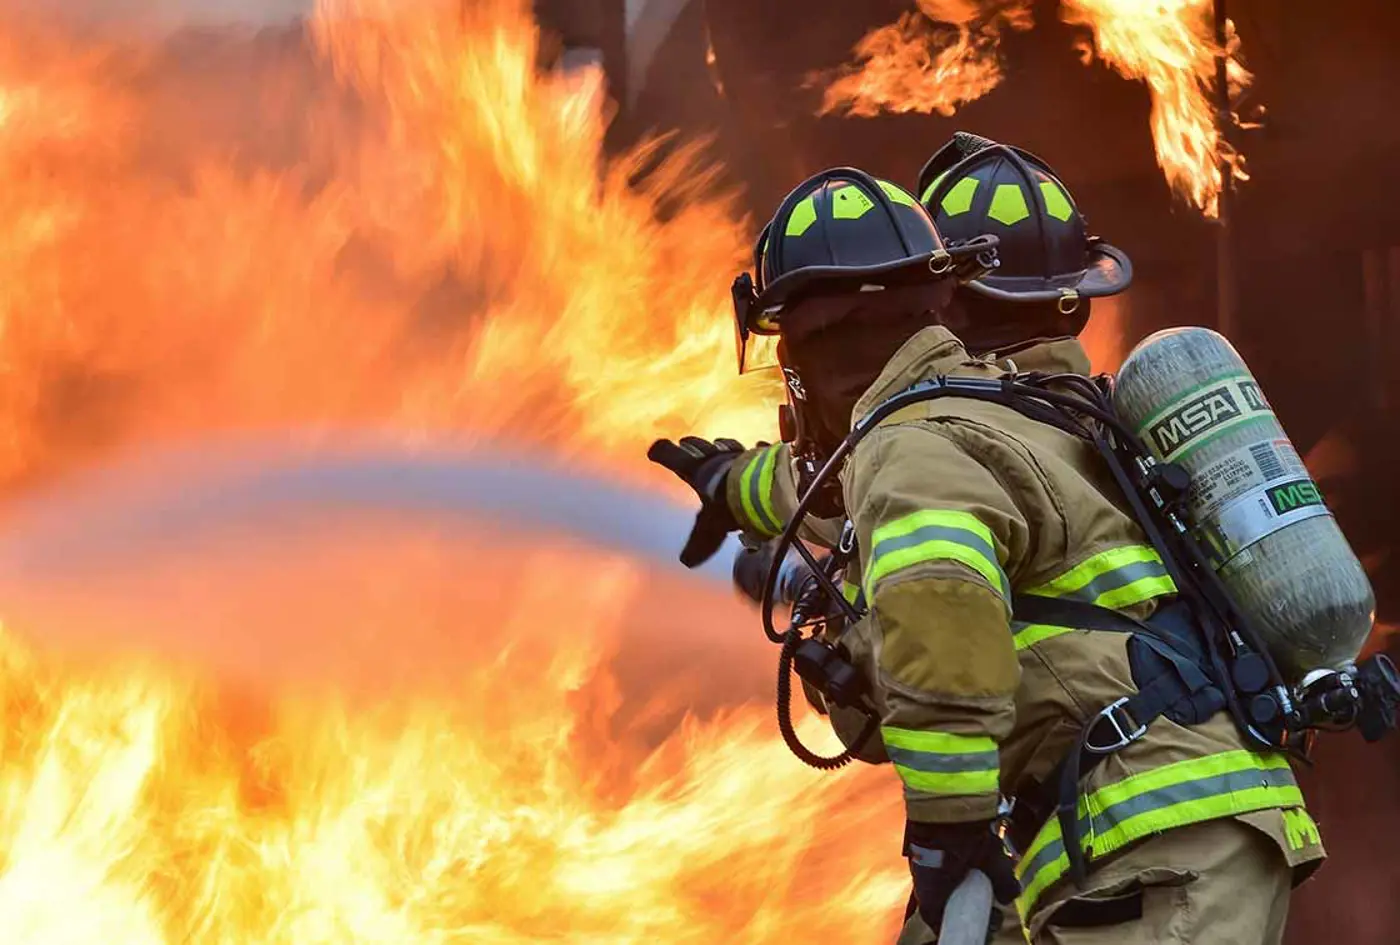 Hoe bescherm je je werf tegen brand? - Comment protéger vos chantiers de l’incendie ?